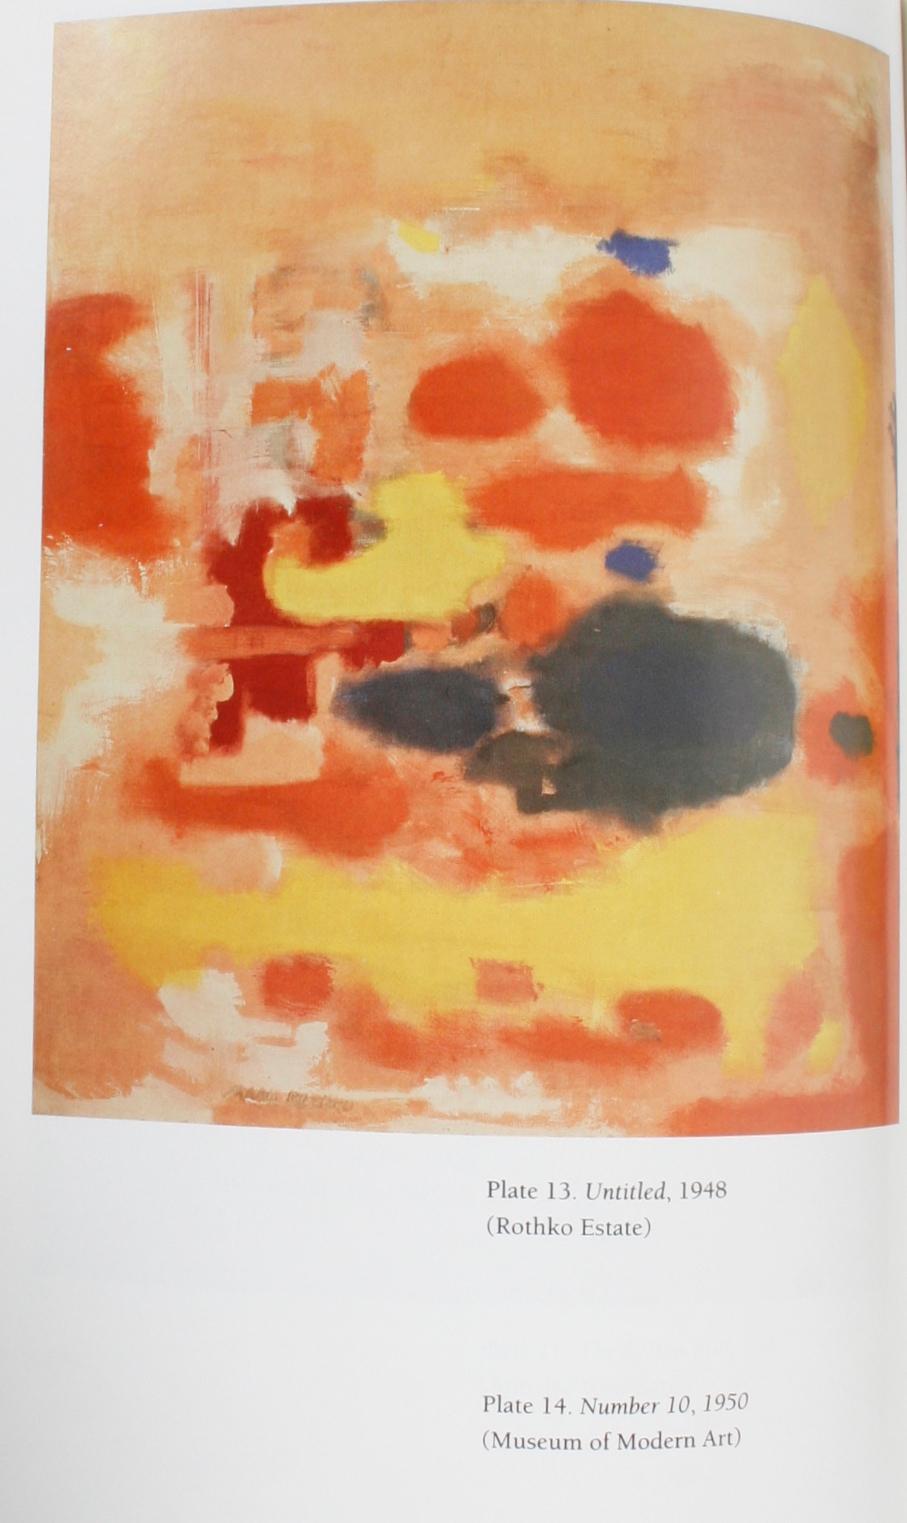 Mark Rothko: A Biography by James E. B. Breslin 8